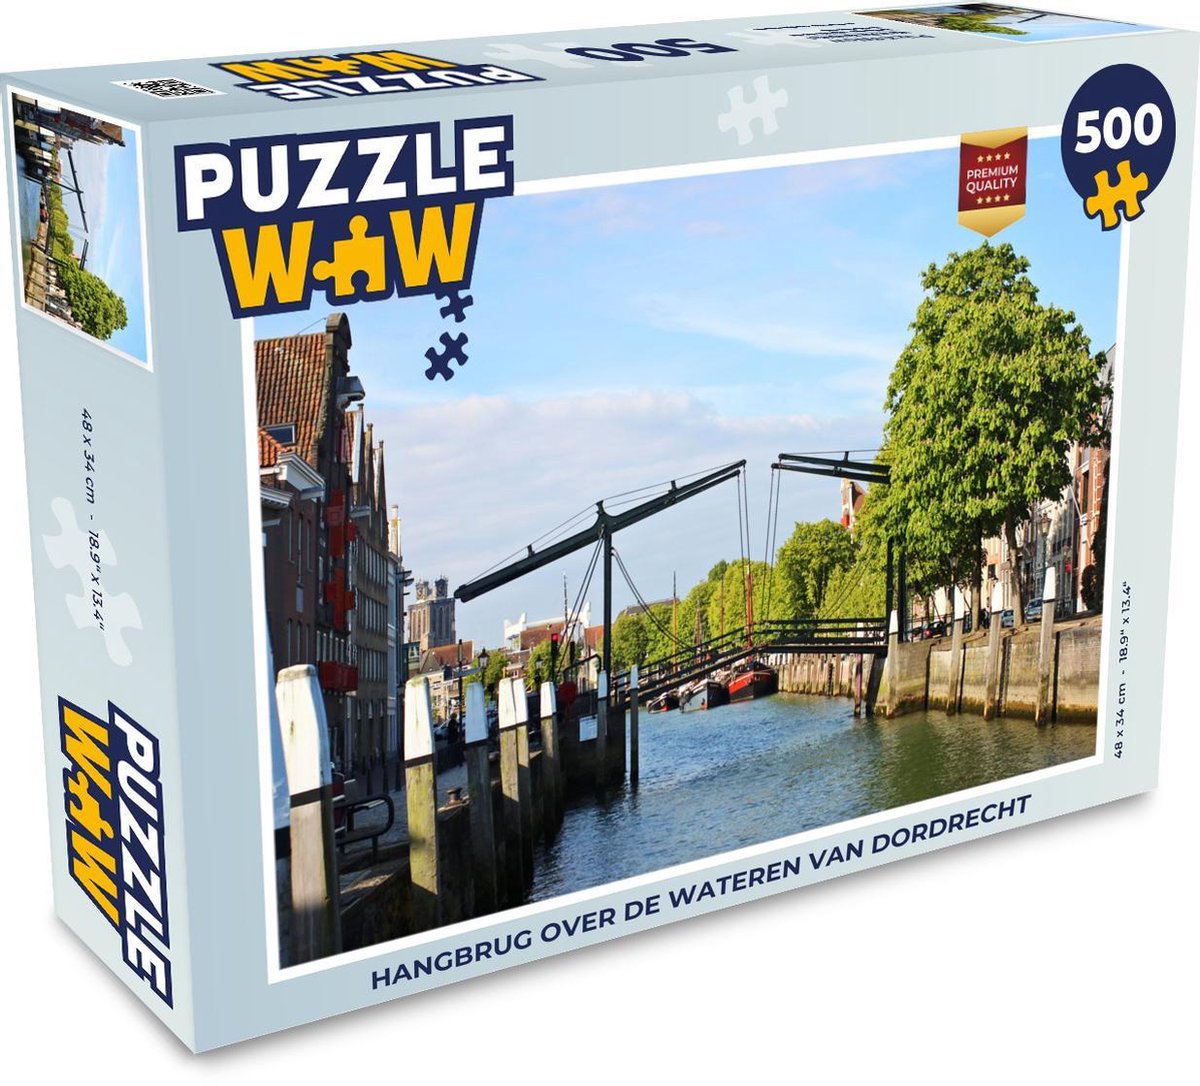 Puzzel 500 stukjes Dordrecht - Hangbrug over de wateren van Dordrecht  - PuzzleWow heeft +100000 puzzels - PuzzleWow